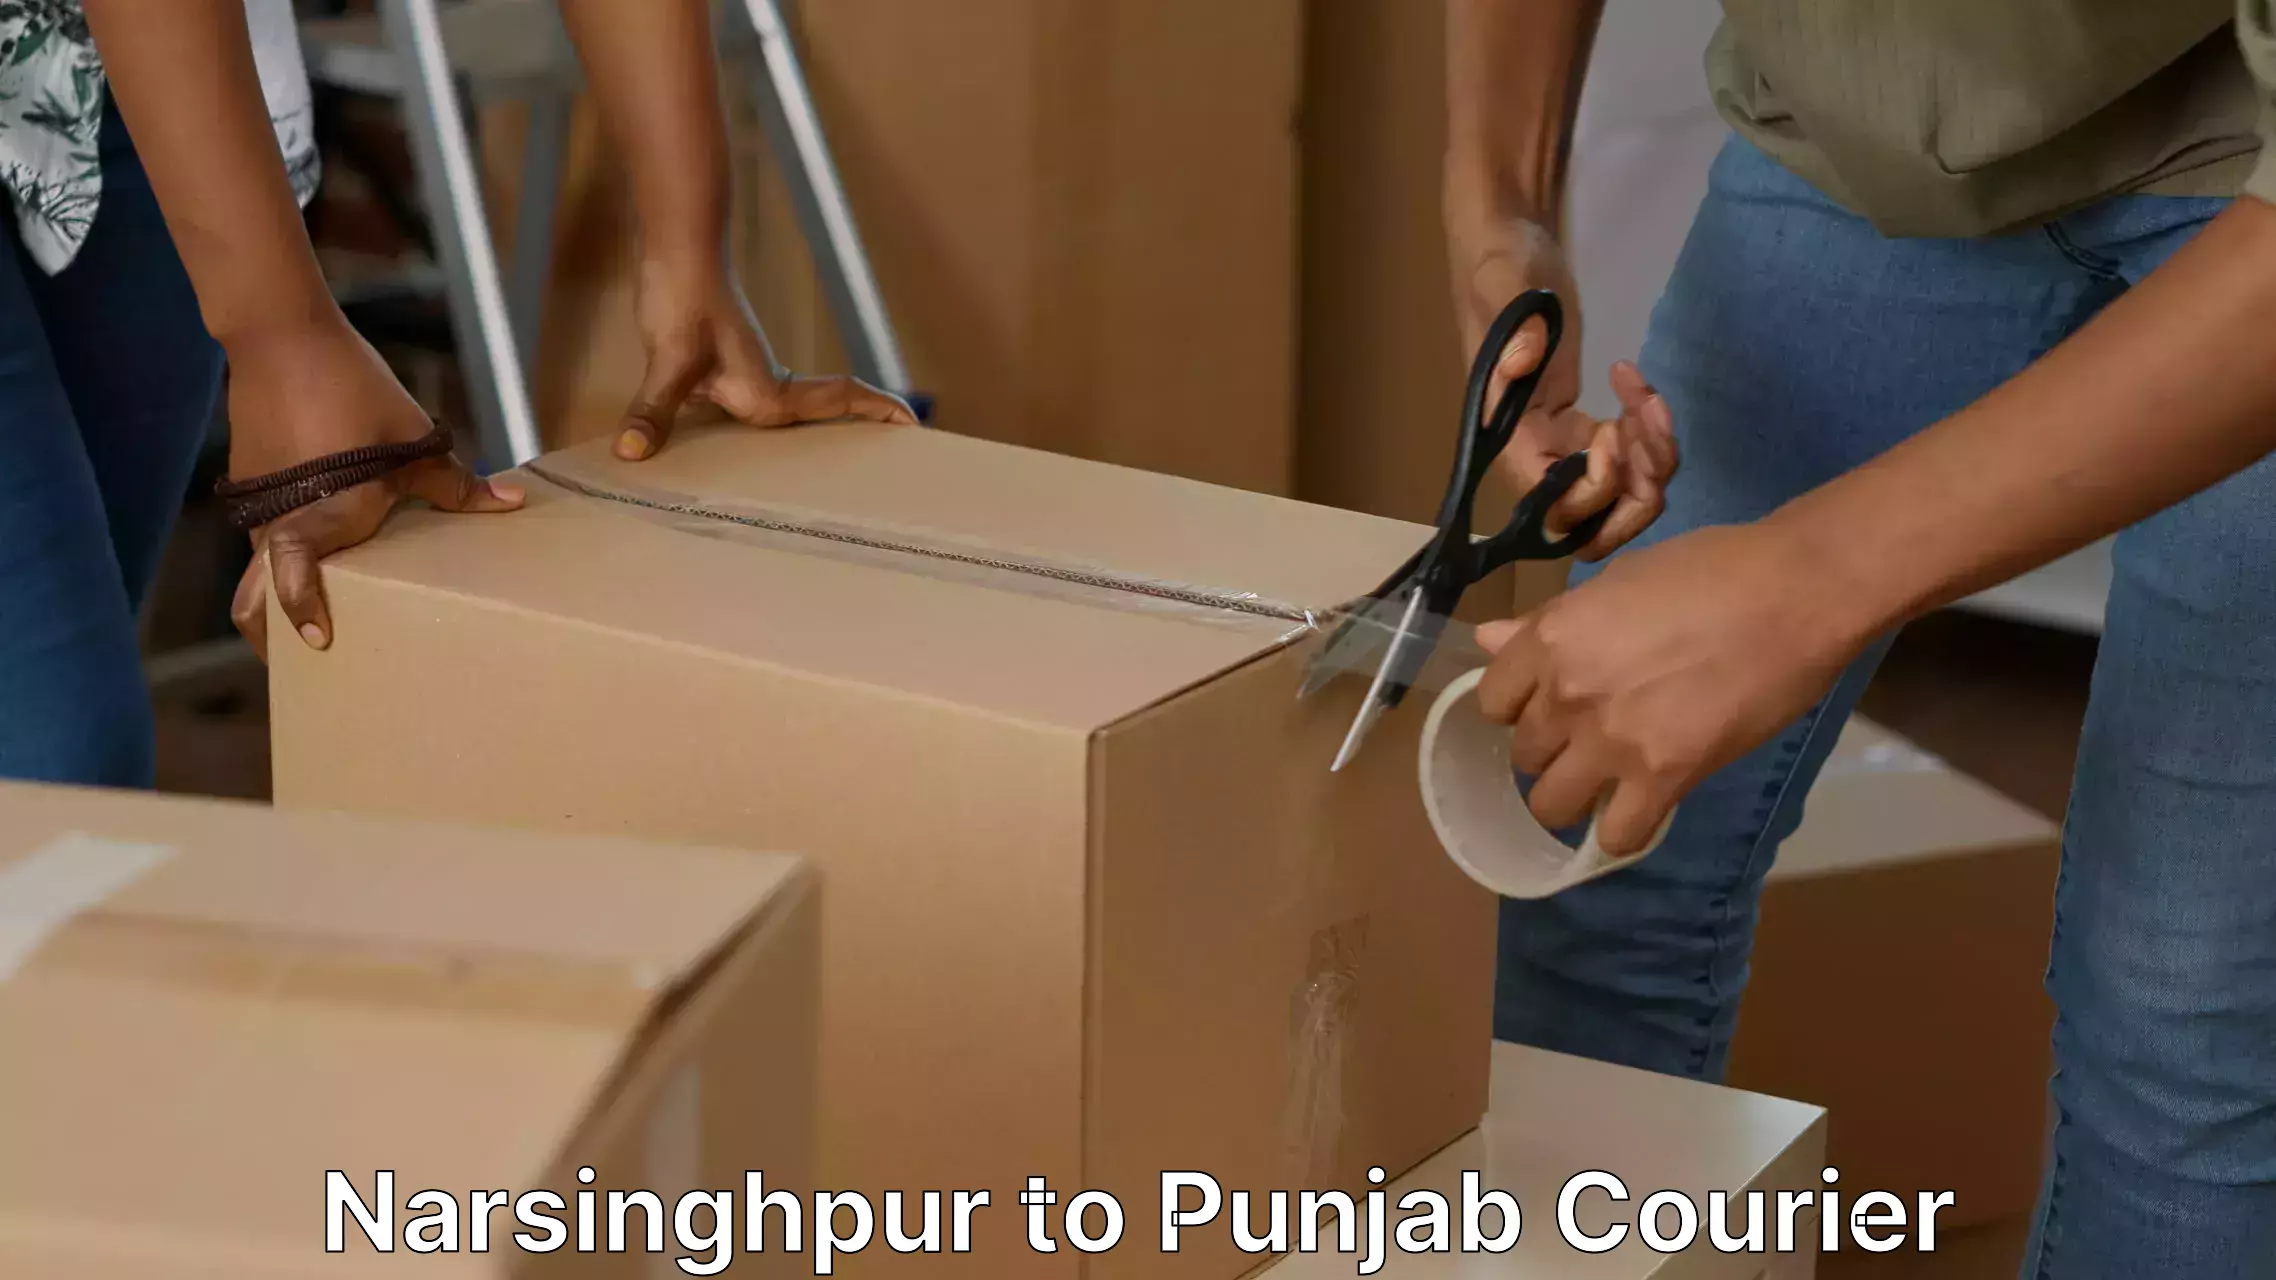 Furniture moving strategies Narsinghpur to Punjab